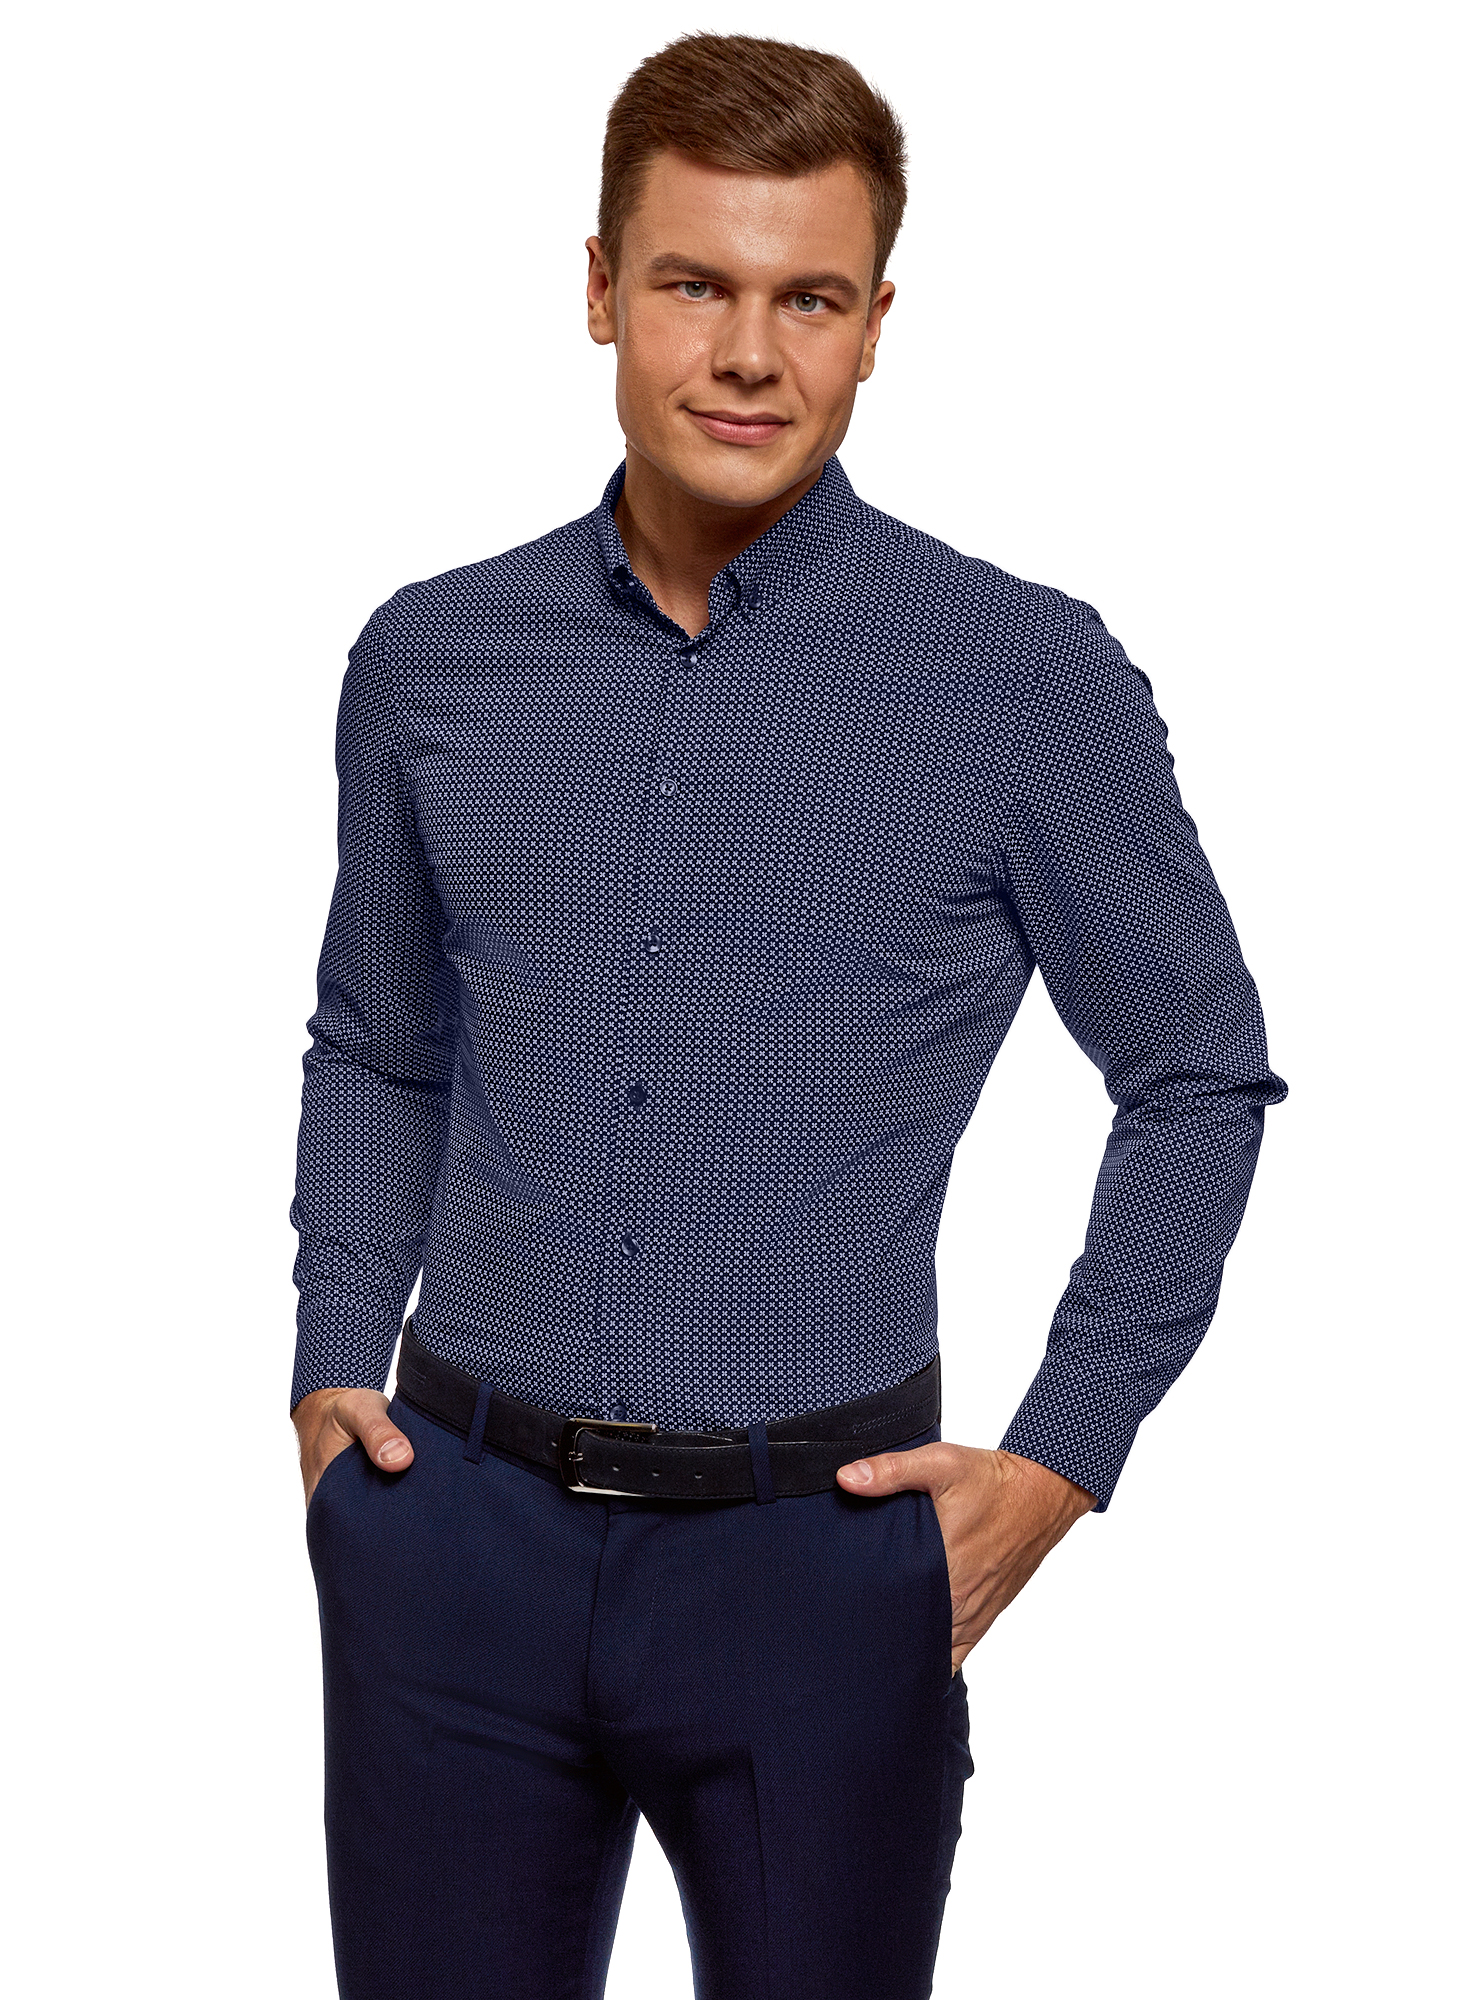 Купить рубашку мужскую с длинным рукавом классическую. Рубашка мужская. Рубашка мужская классическая. Синяя рубашка мужская. Темно синяя рубашка.